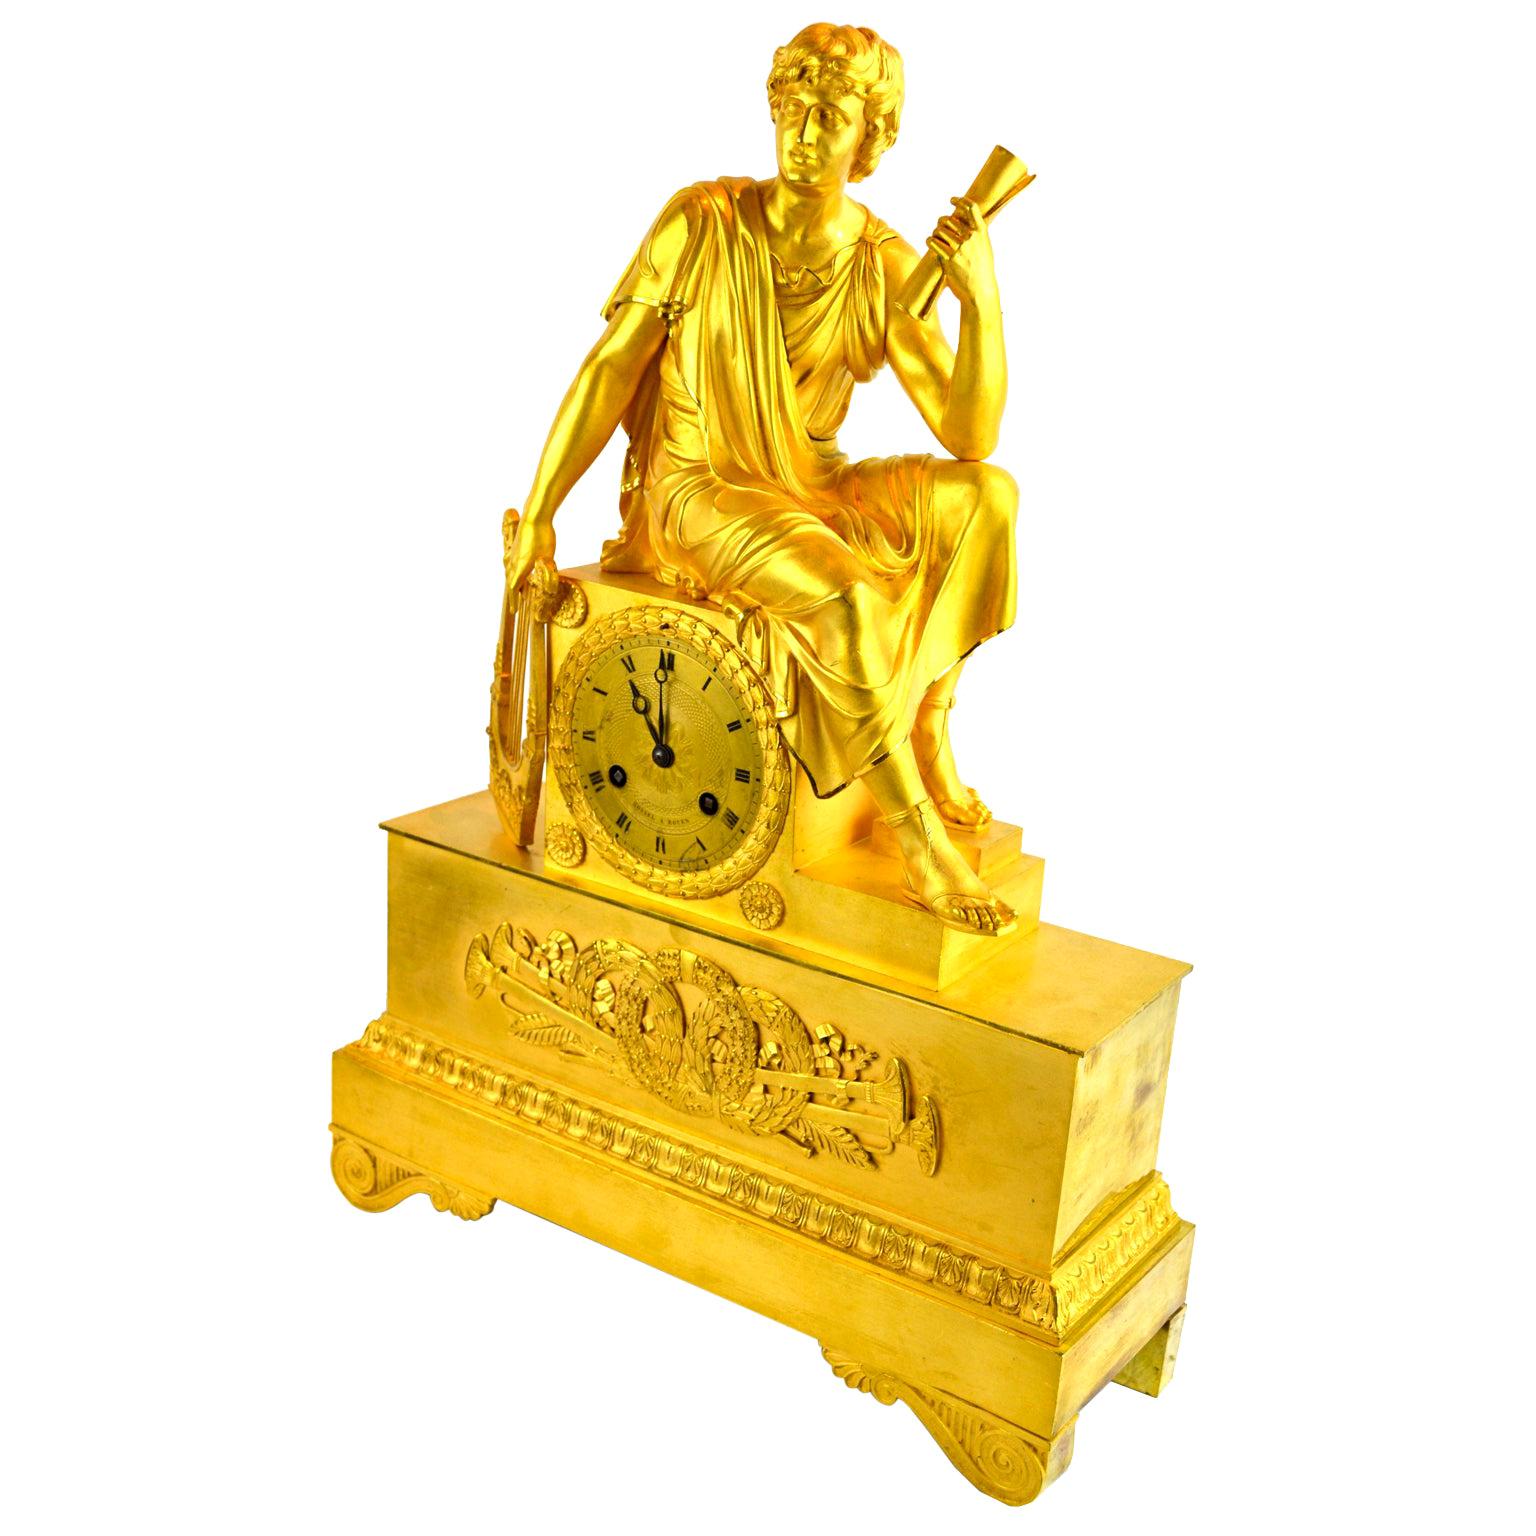 Horloge figurative en bronze doré de l'Empire français représentant une jeune fille romaine tenant un rouleau